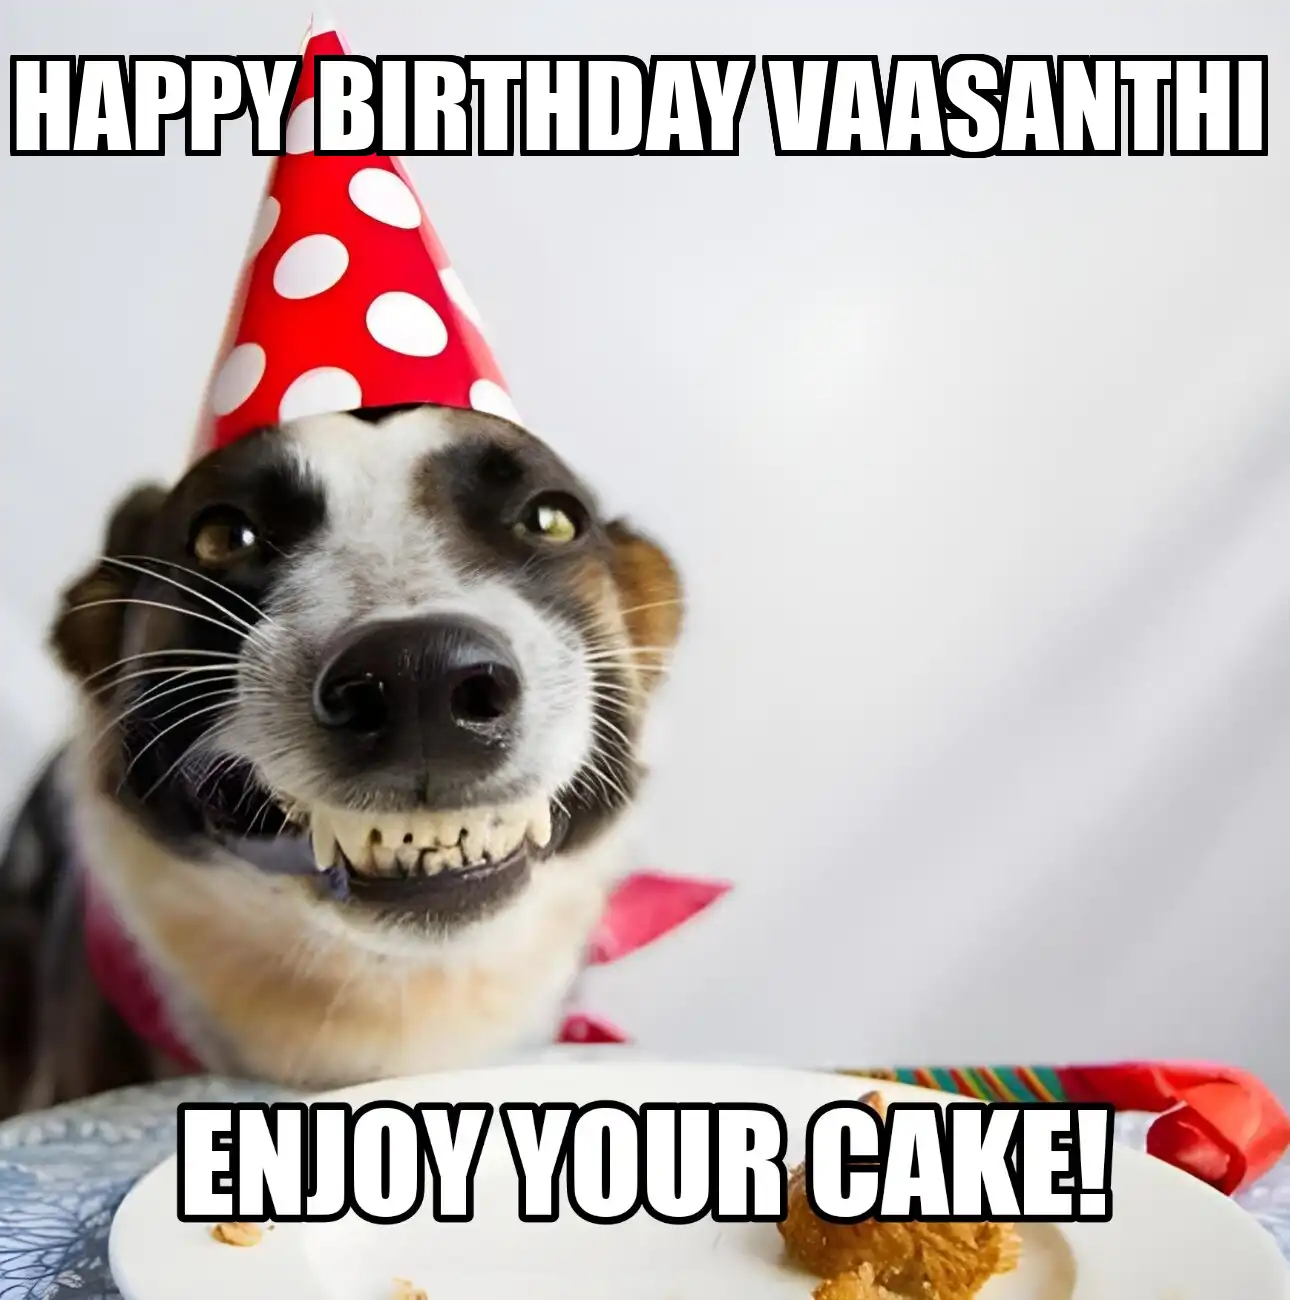 Happy Birthday Vaasanthi Enjoy Your Cake Dog Meme